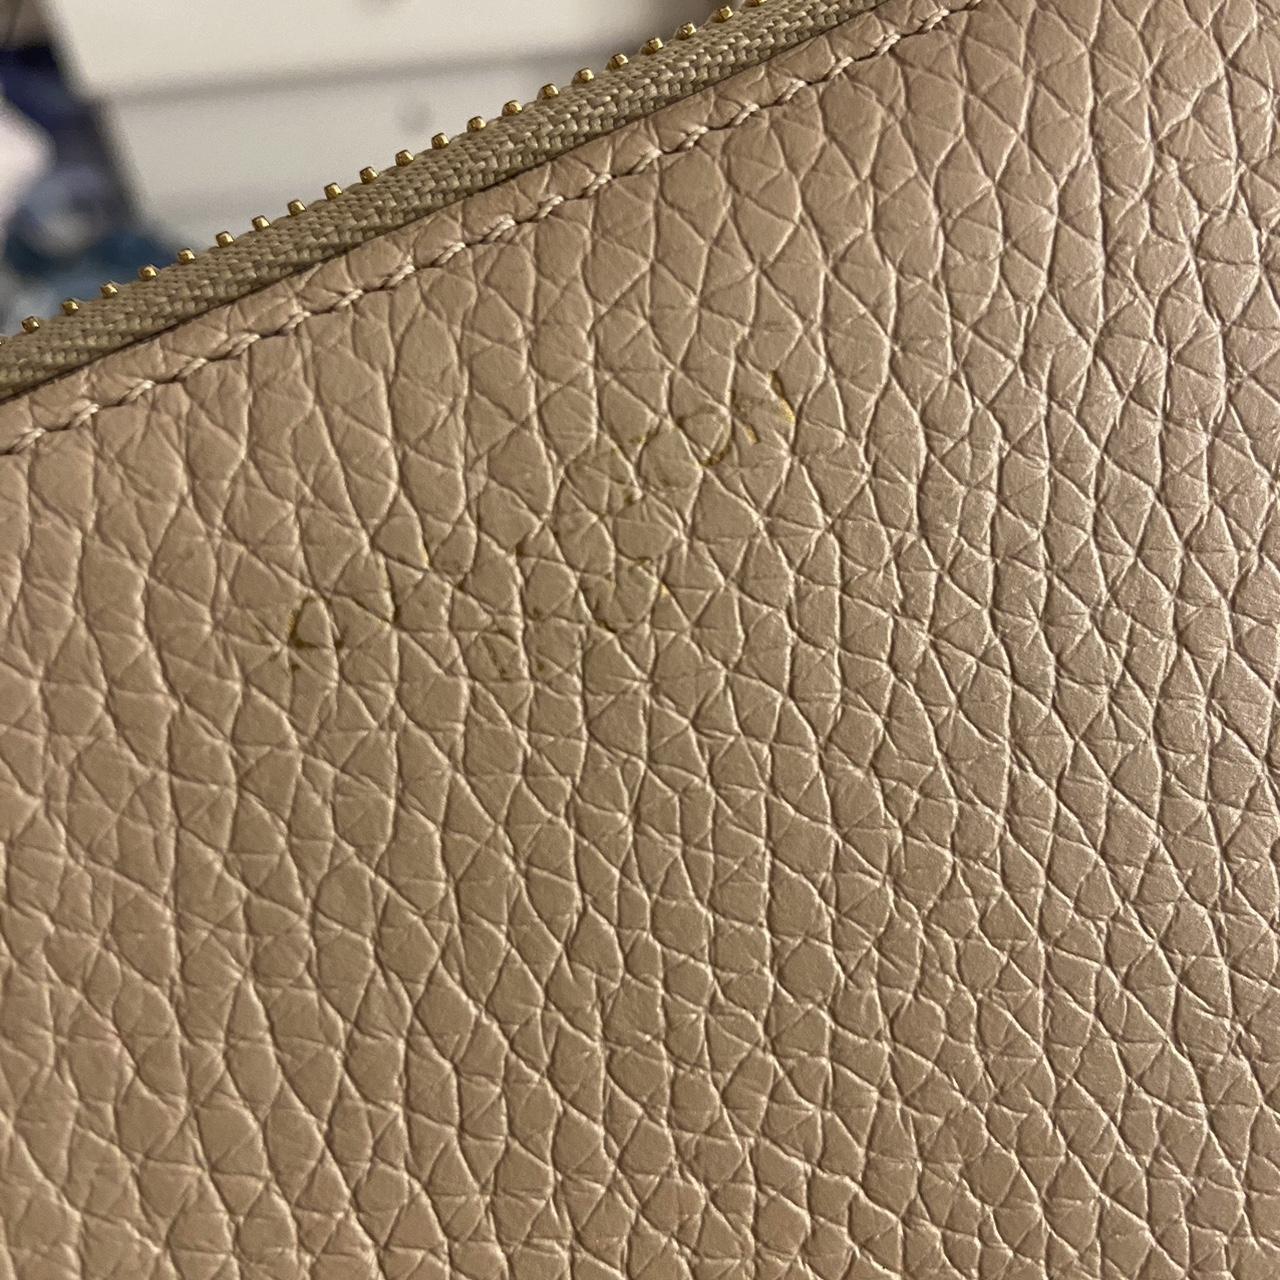 Louis Vuitton Paris wallet in white, brand new no - Depop